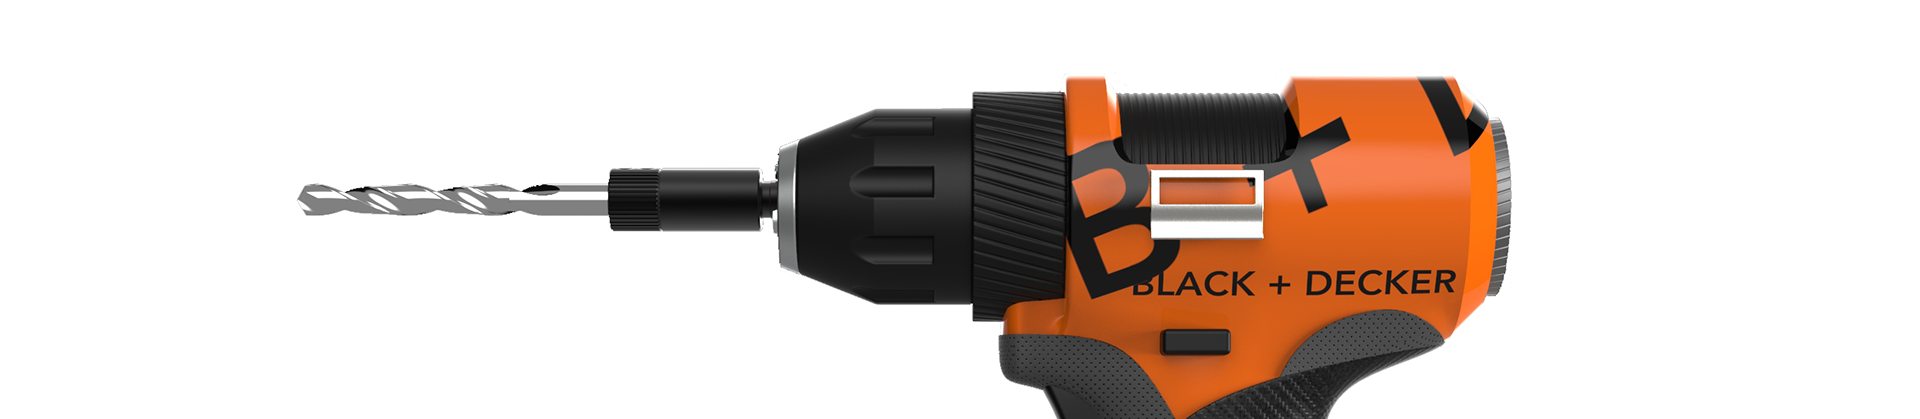 BLACK+DECKER 5.2Amp 3/8-Inch Corded Drill With 10 Bonus Drill Bits